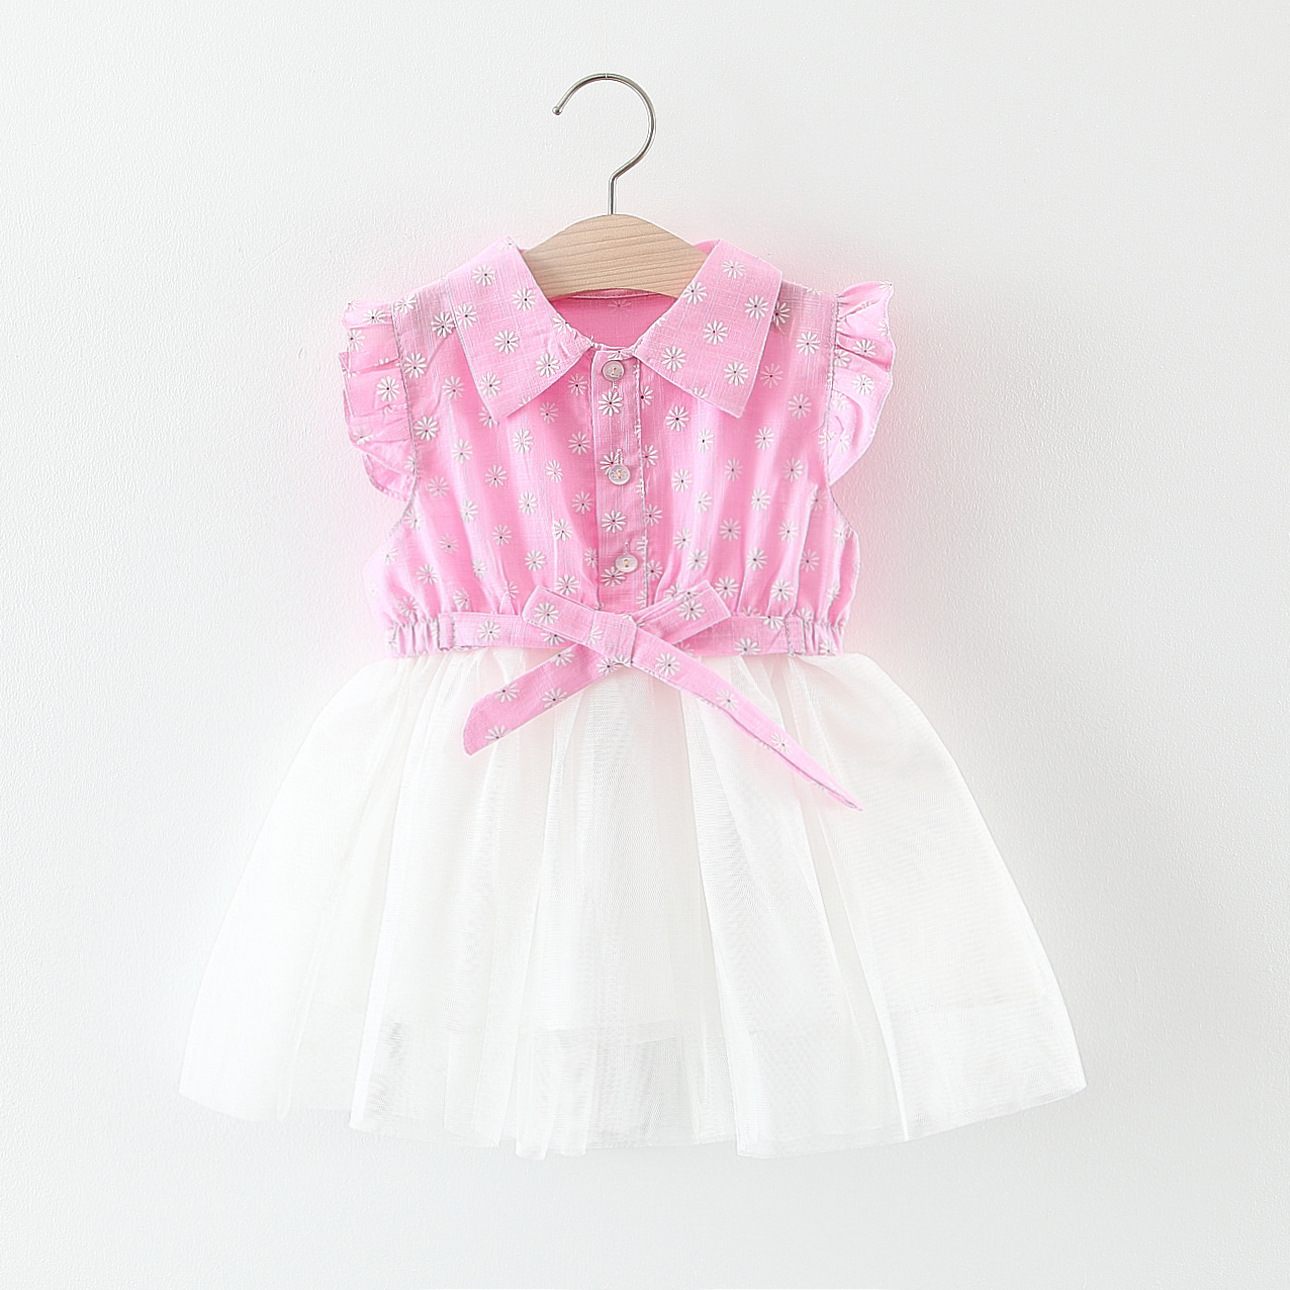 BY-17 Dress Bayi Design Tutu Pink Putih / Gaun Baju Anak Perempuan Import Premium Korea Design Sangat Imut dan Lucu Sekali